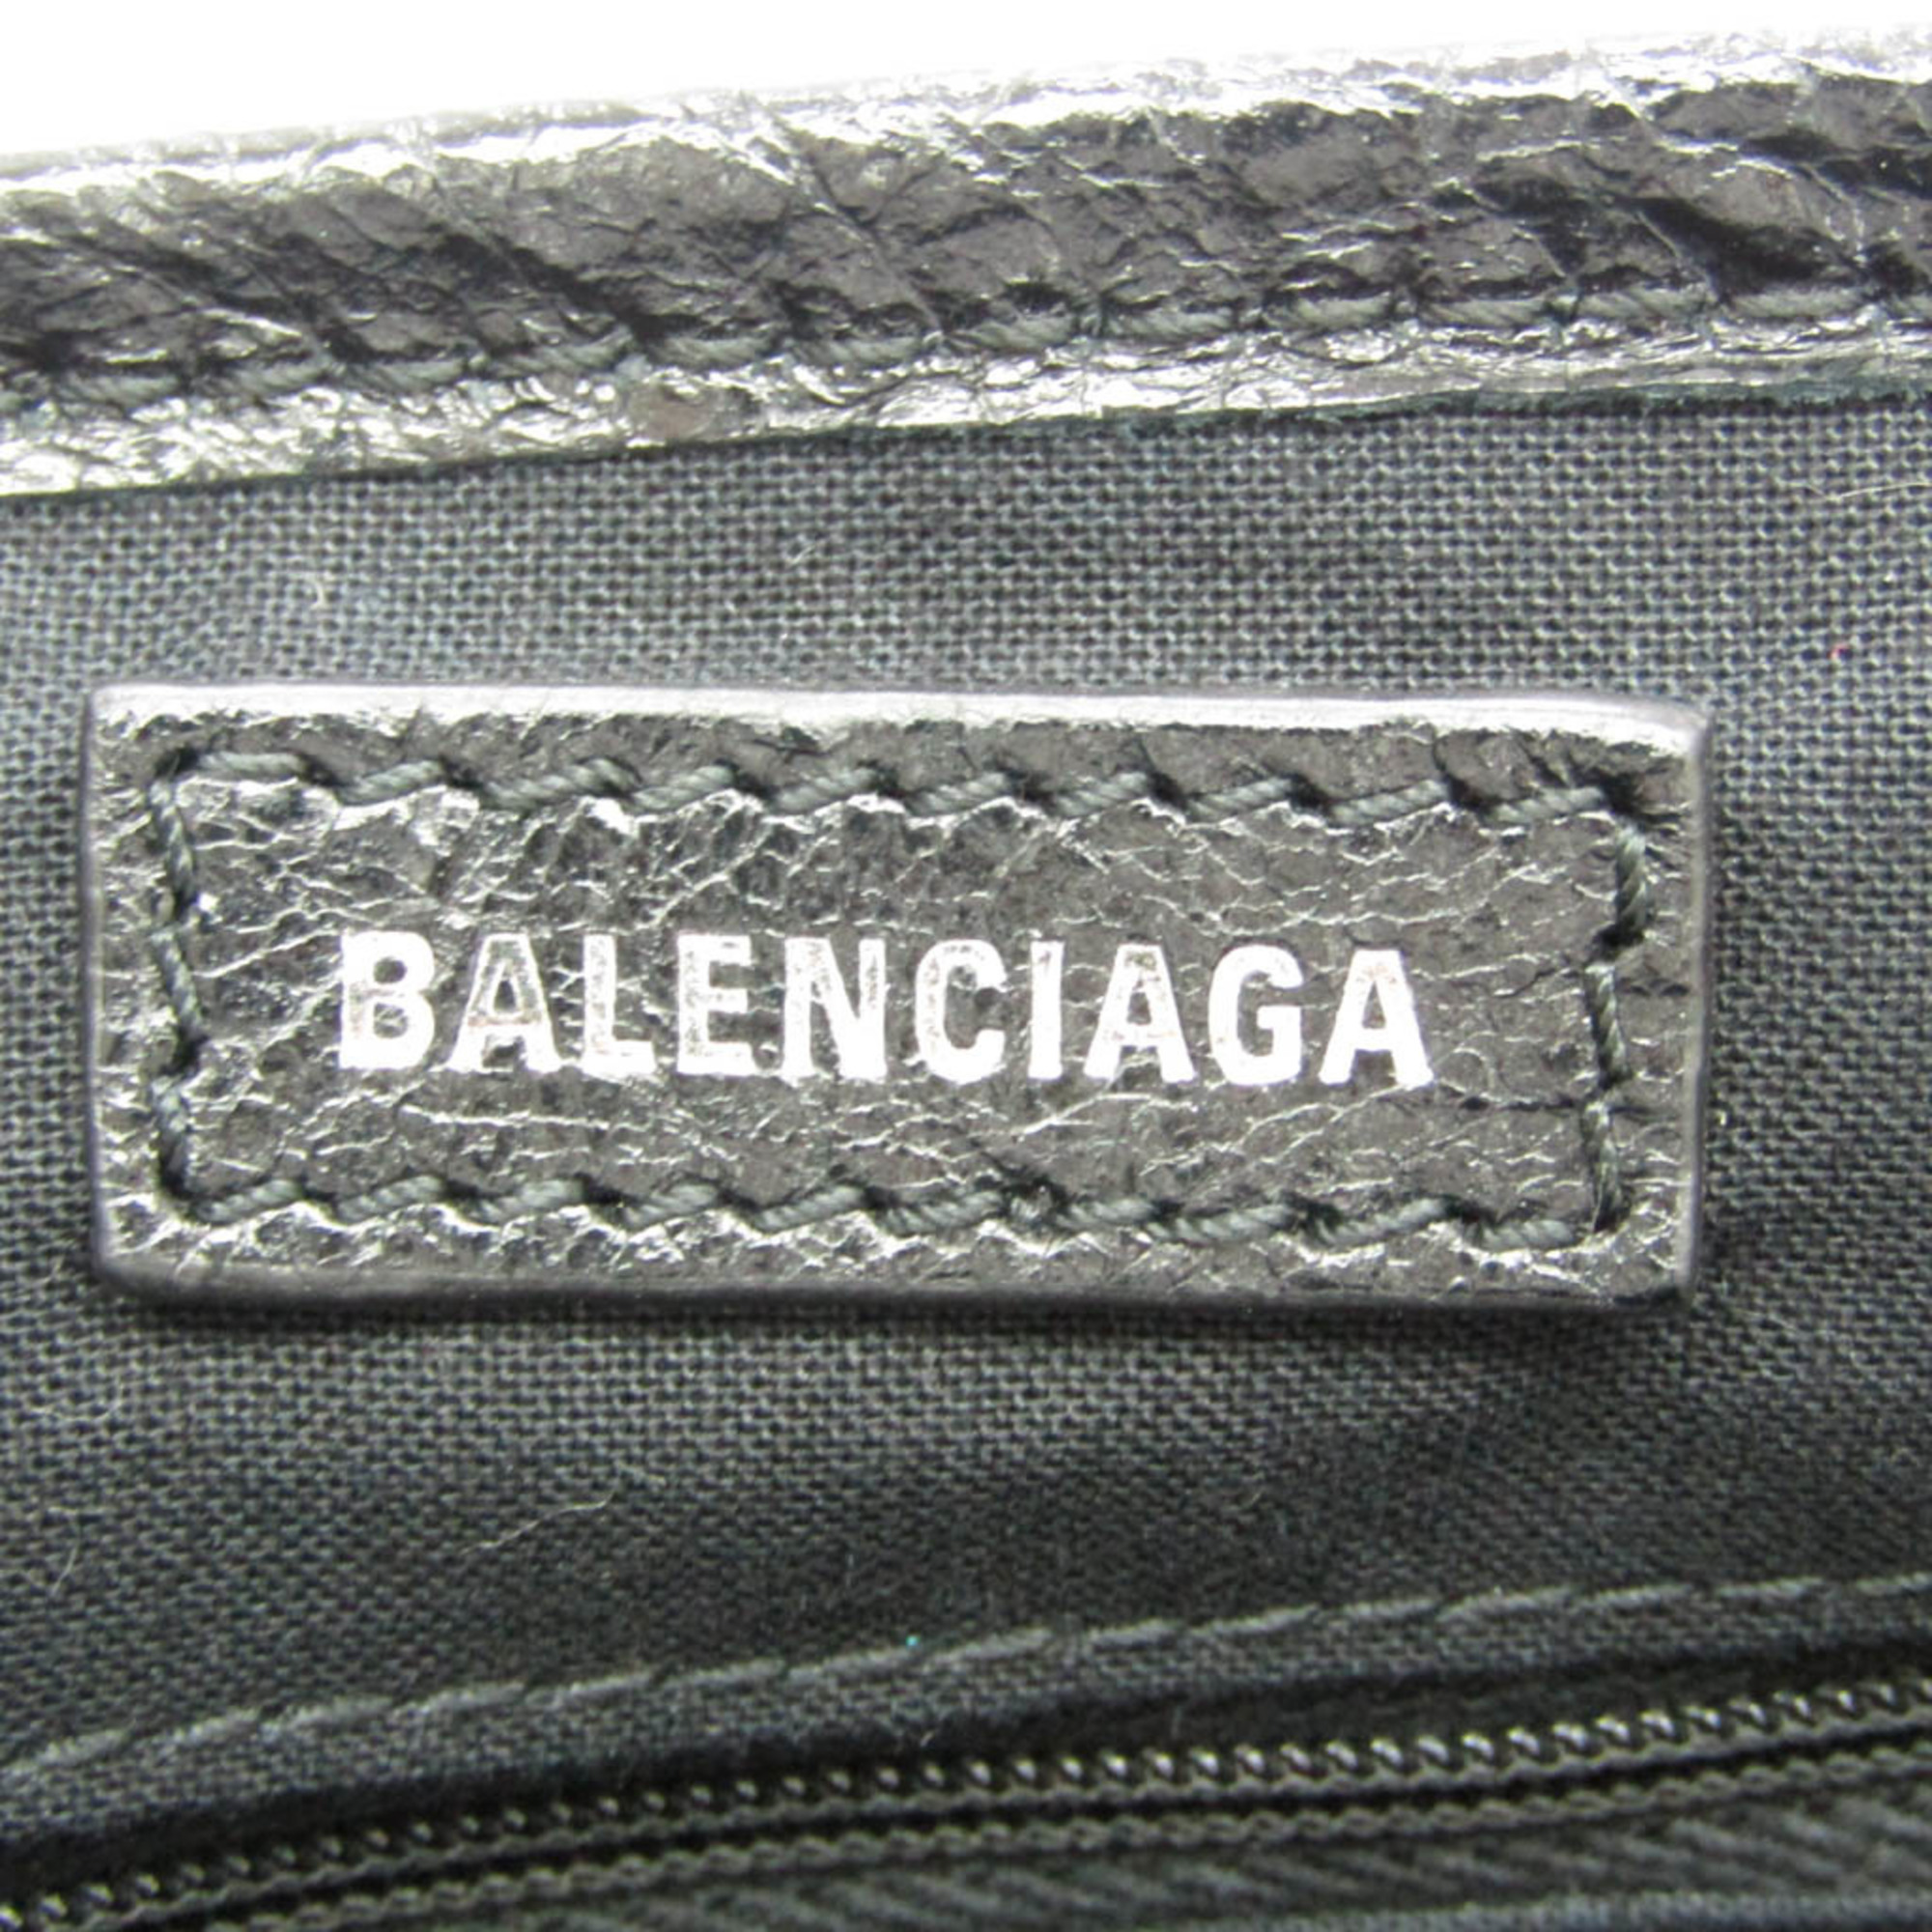 バレンシアガ(Balenciaga) ネイビーカバスXS 542018 レディース レザー ハンドバッグ,ショルダーバッグ ブラック